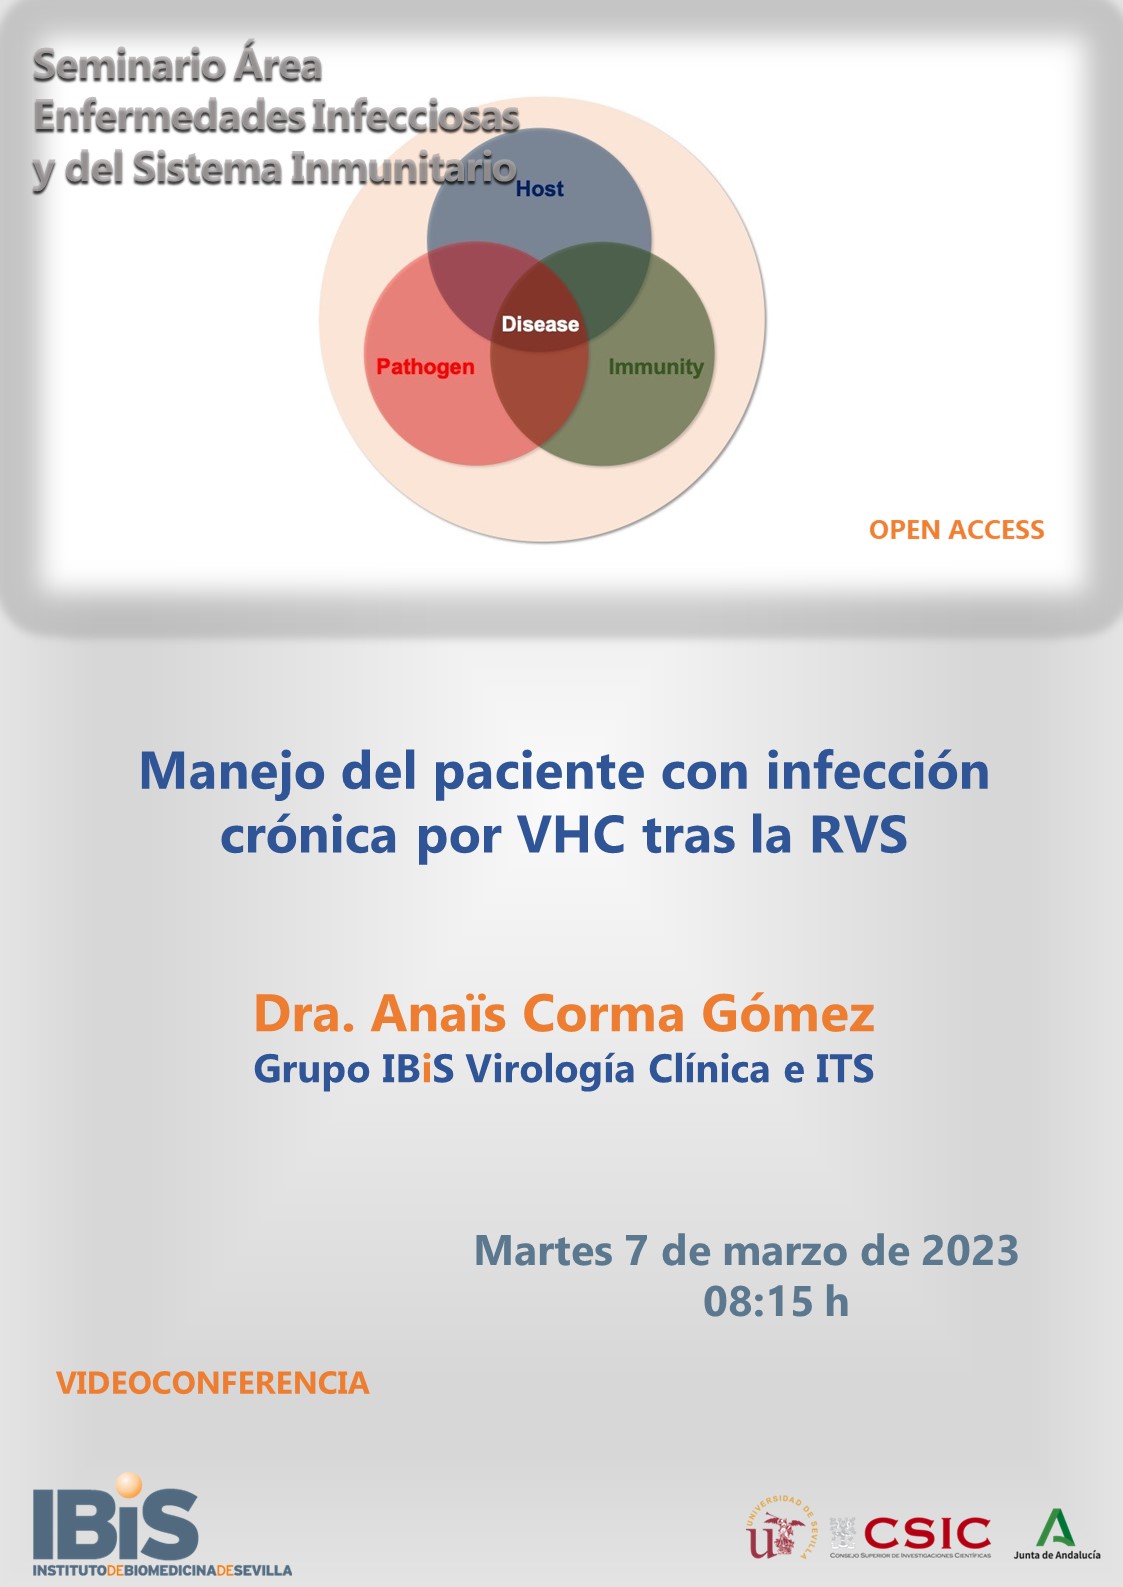 Poster: Manejo del paciente con infección crónica por VHC tras la RVS